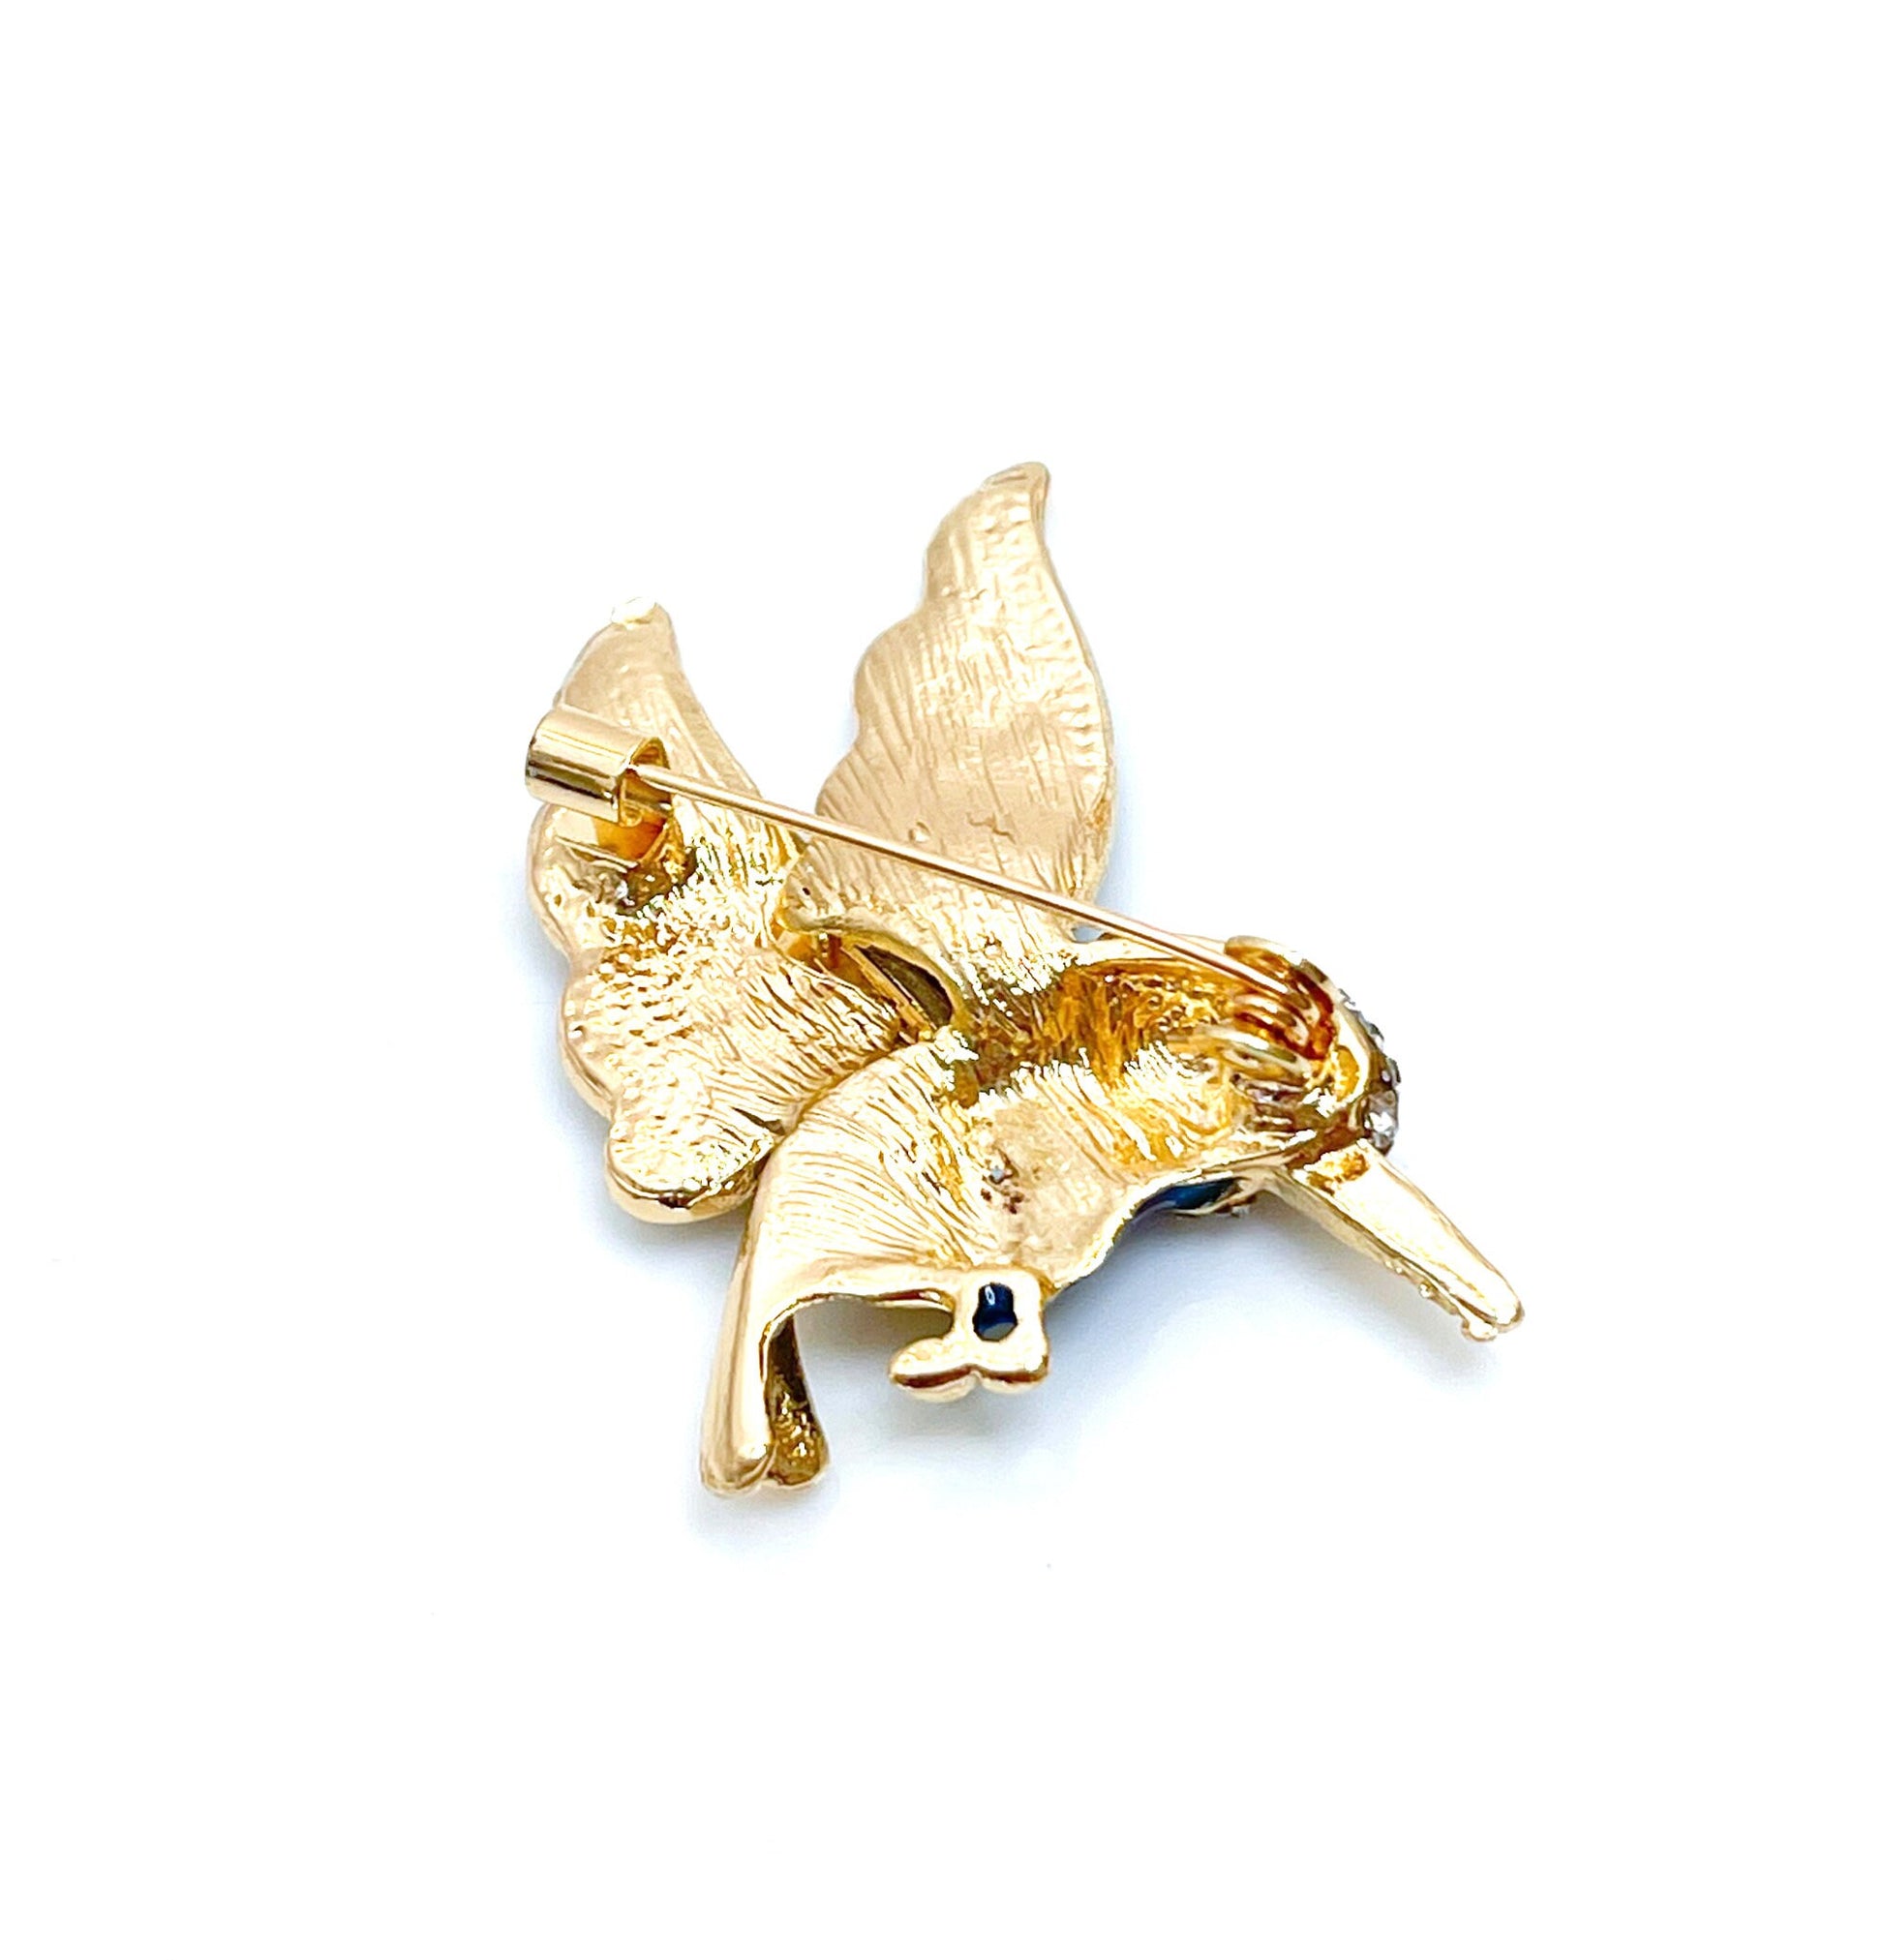 Green Hummingbird Brooch | Gift for Bird Lovers | Green and Gold Hummingbird | Cute Bird Pin